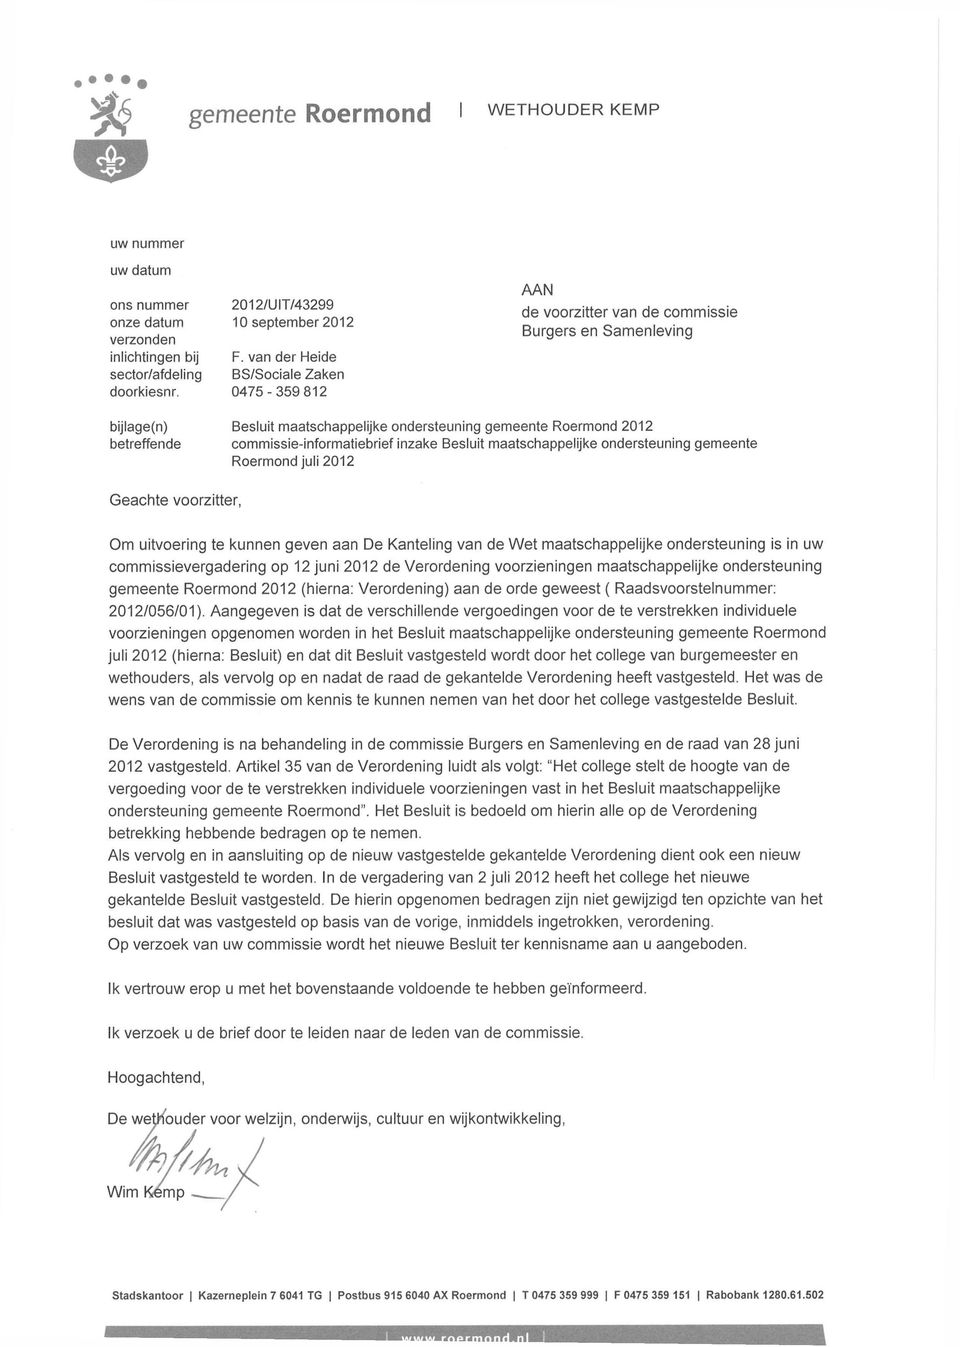 commissie-informatiebrief inzake Besluit maatschappelijke ondersteuning gemeente Roermond juli 2012 Geachte voorzitter, Om uitvoering te kunnen geven aan De Kanteling van de Wet maatschappelijke